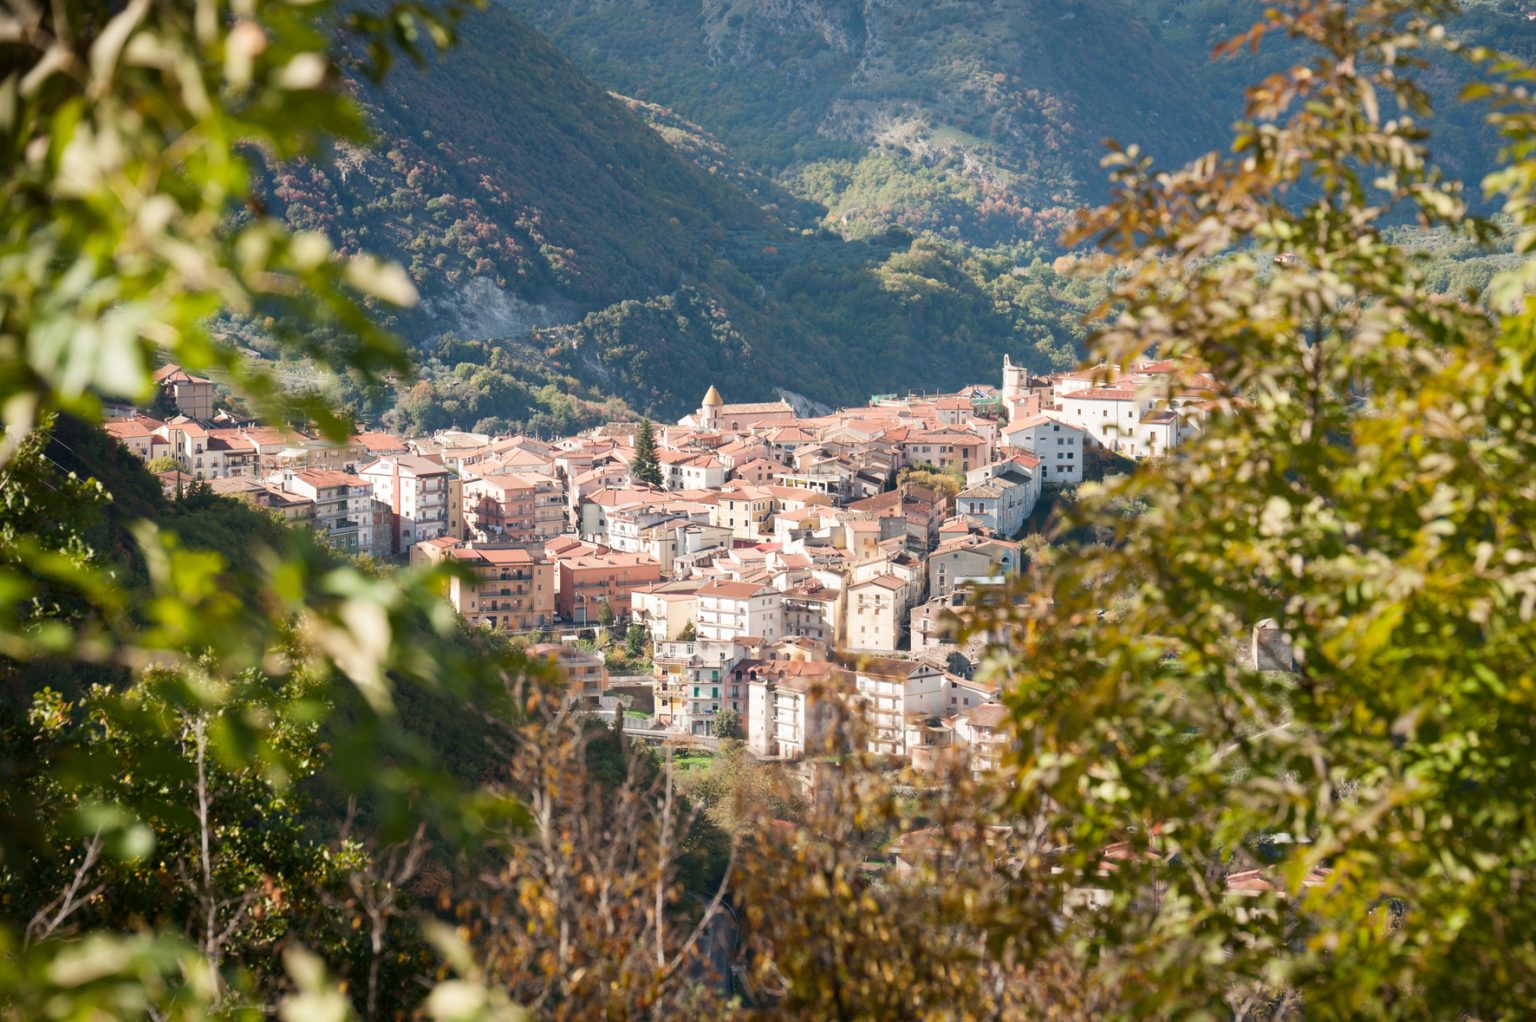 Municipality of Vietri di Potenza